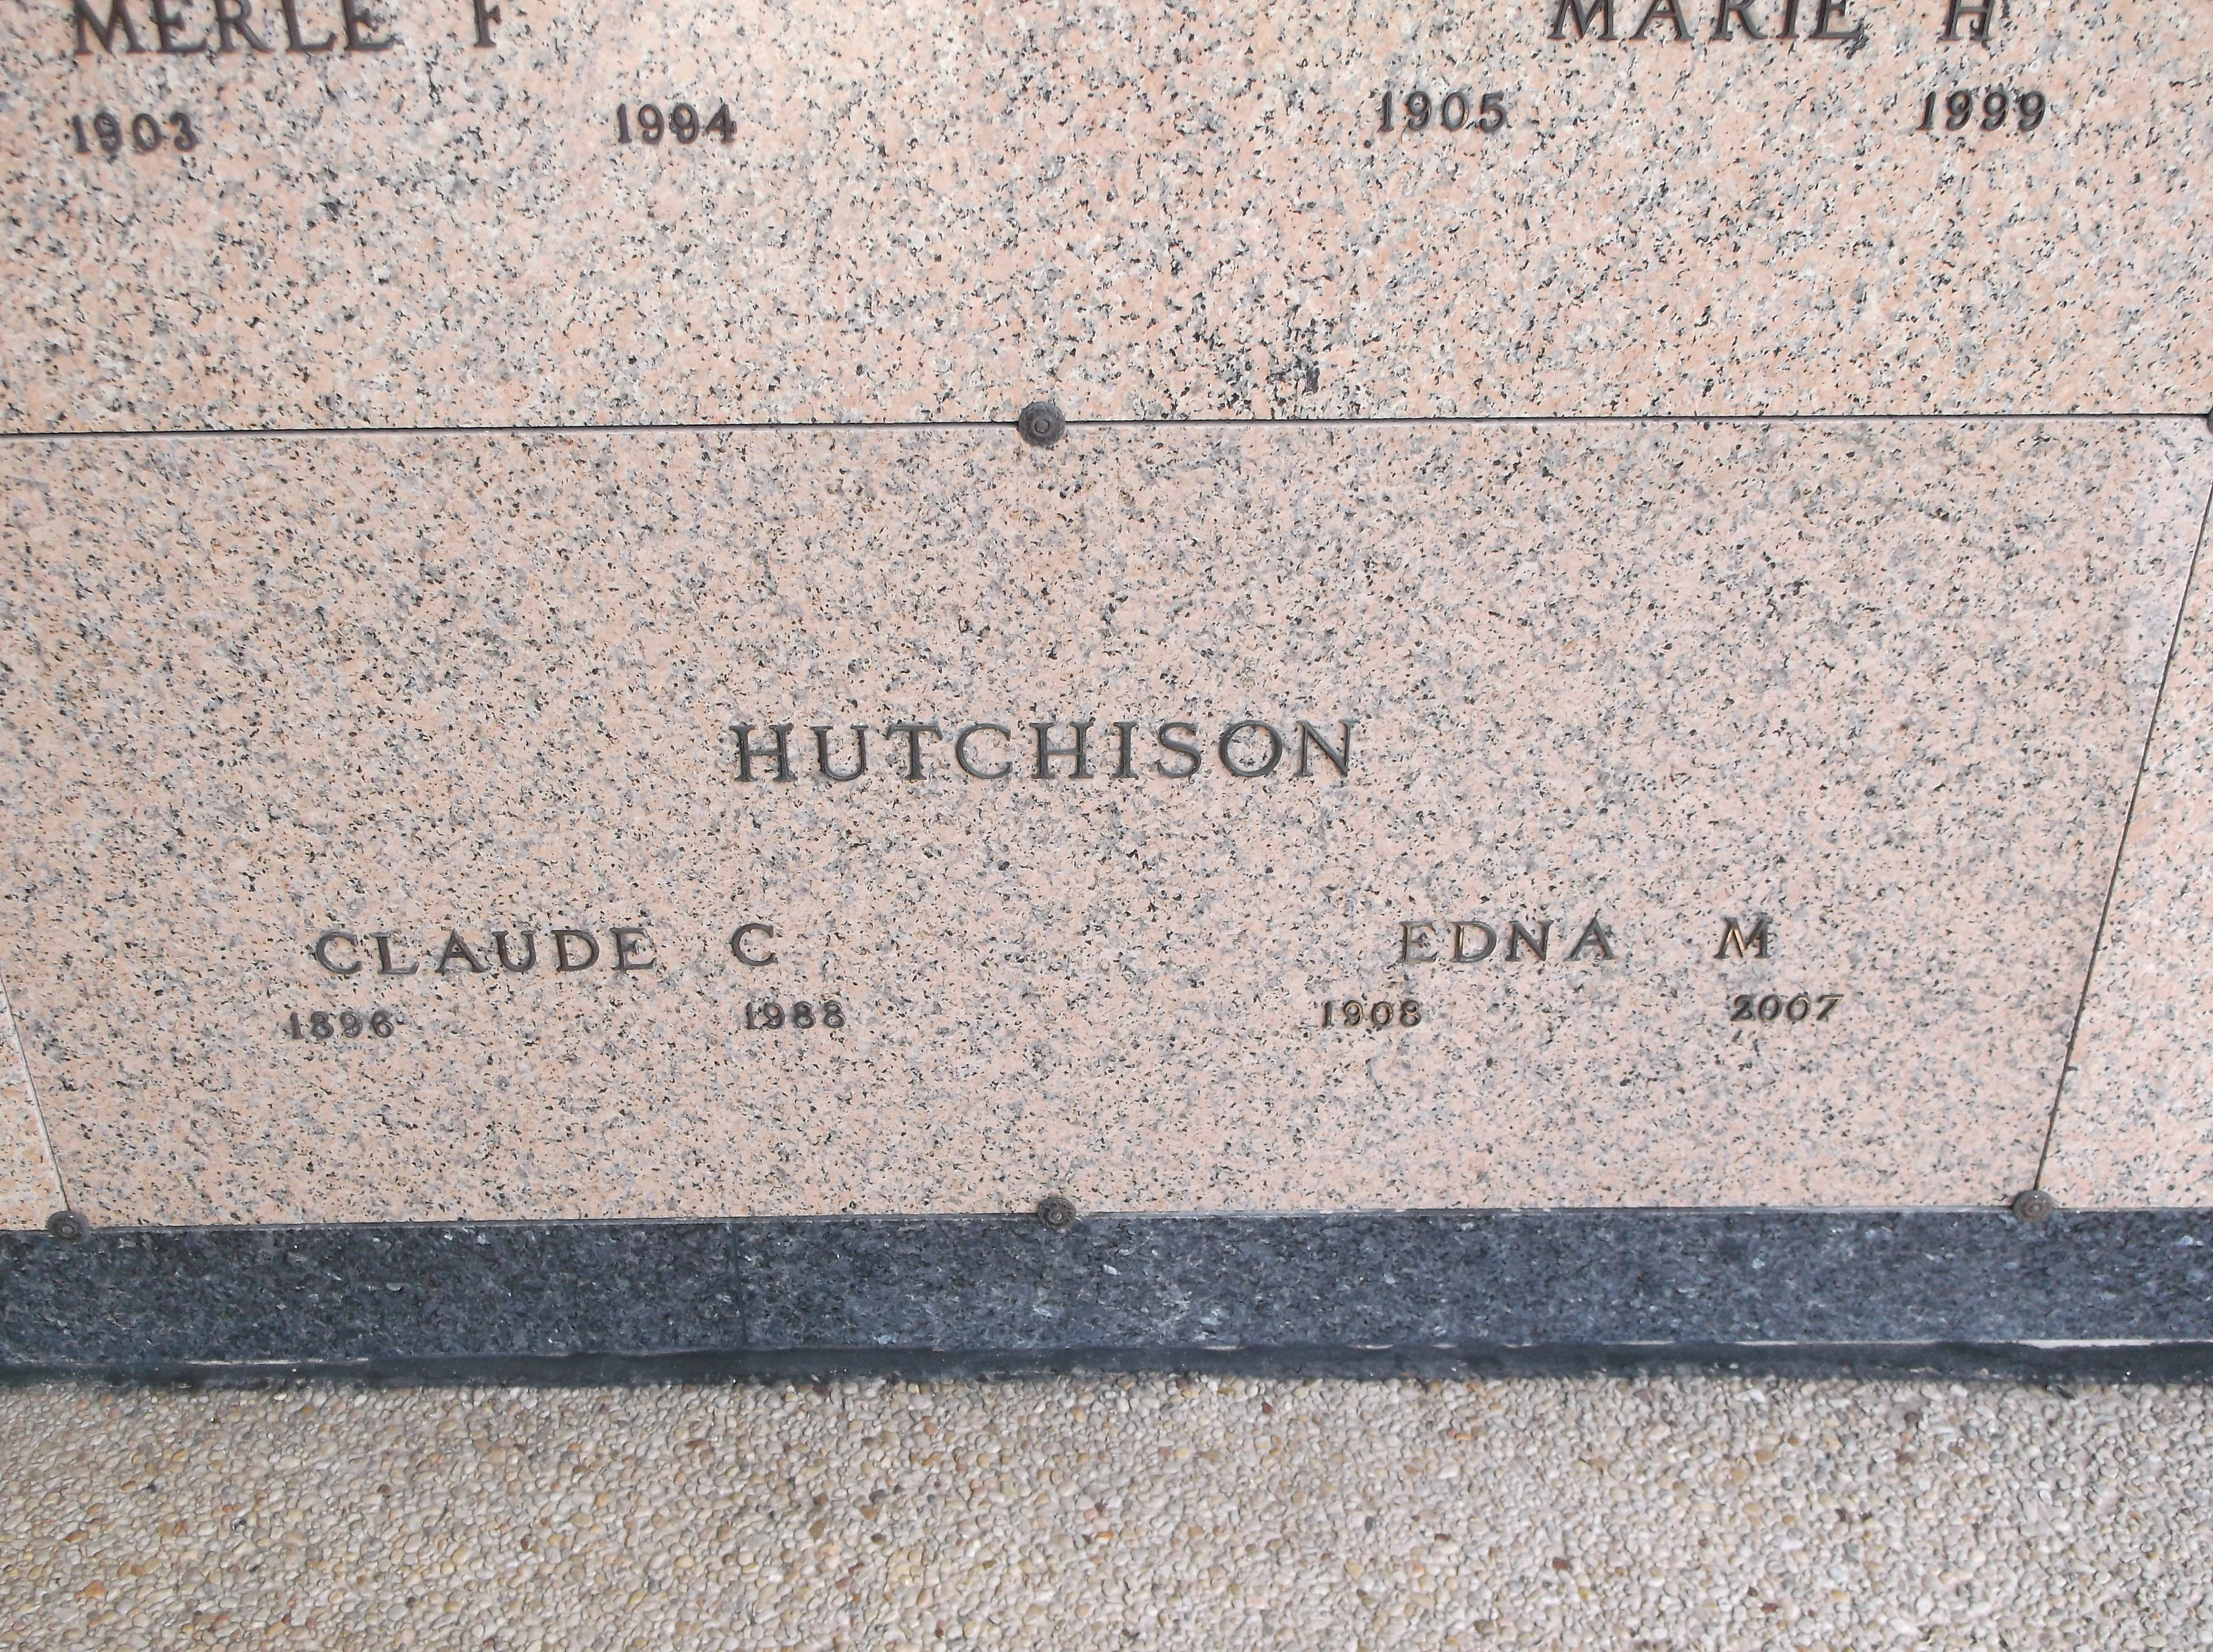 Claude C Hutchison